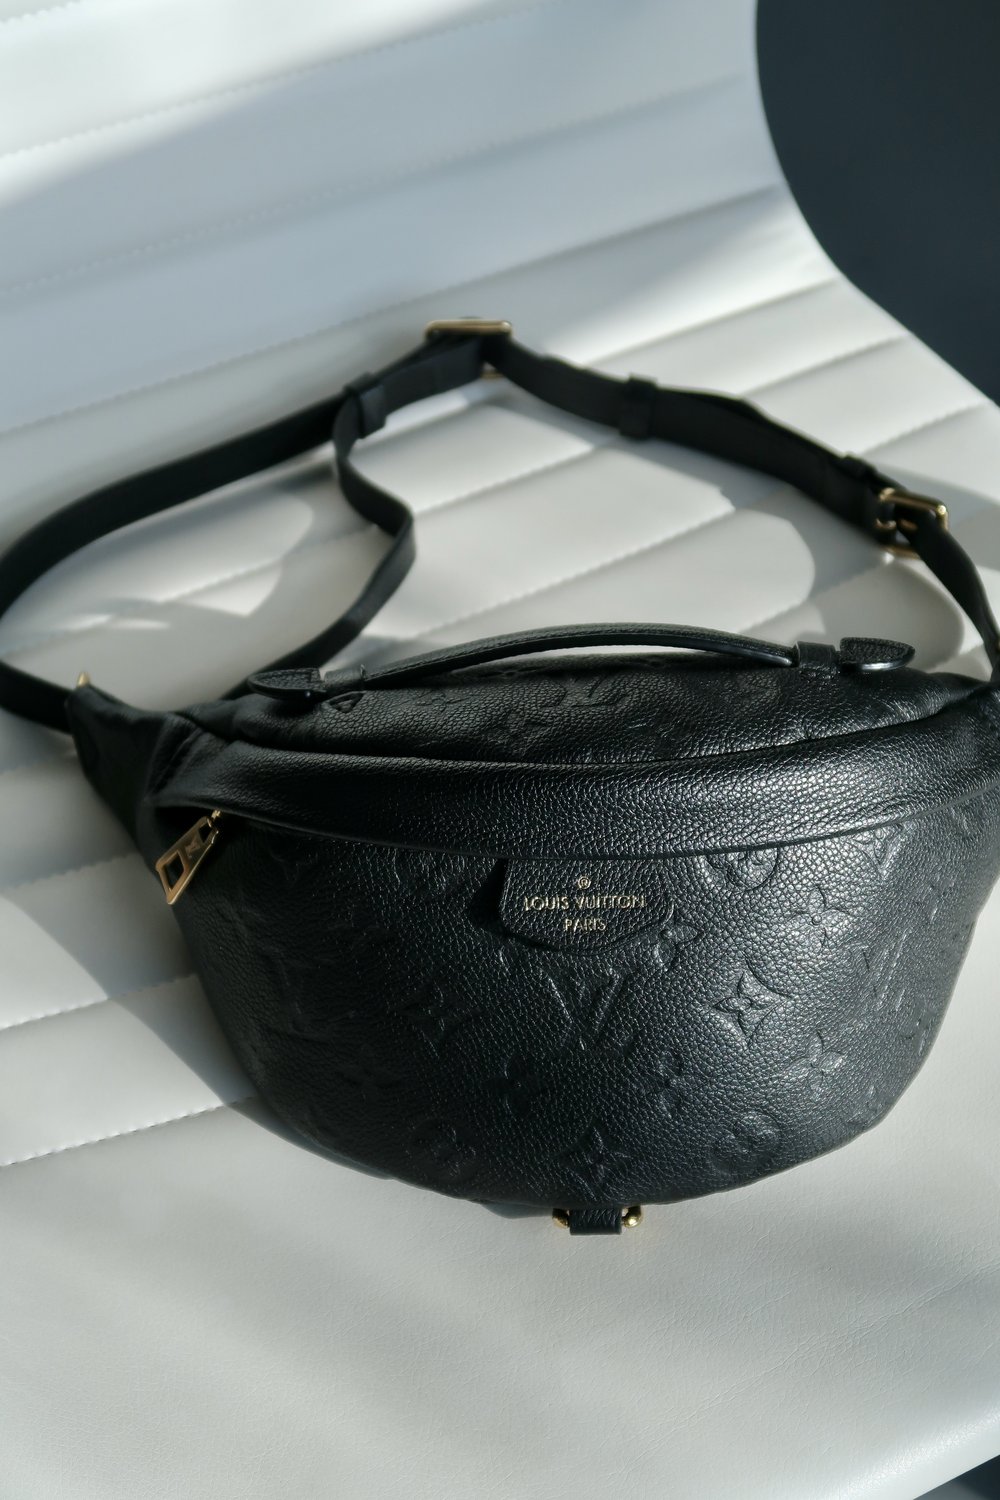 Louis Vuitton Monogram Empreinte Bum Bag Black Noir Leather Travel Fanny  Pack